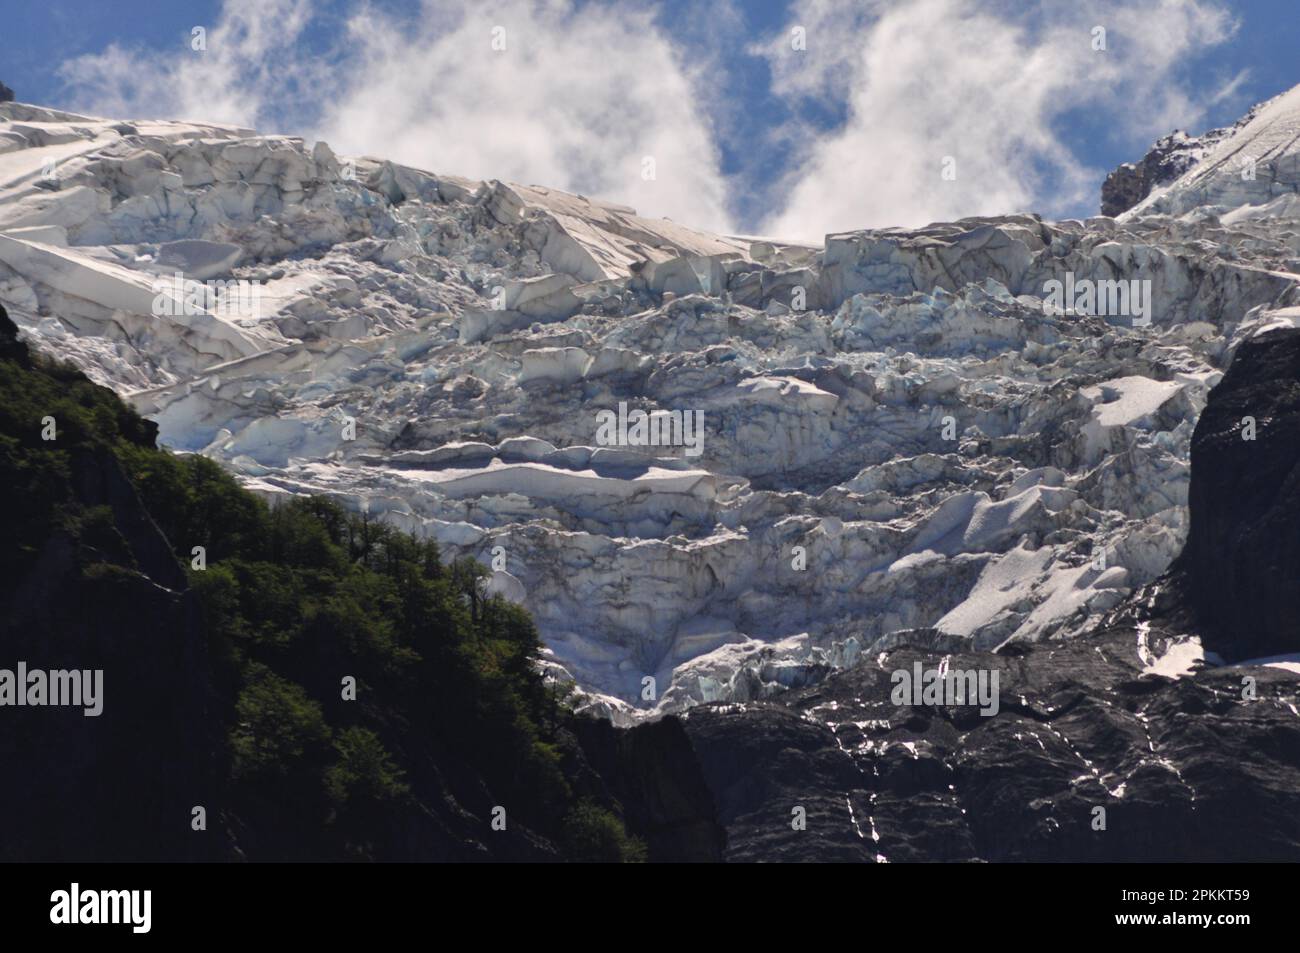 Pared de hielo, Cerro Tronador, Bariloche, Provincia de Río Negro, Argentina Stock Photo